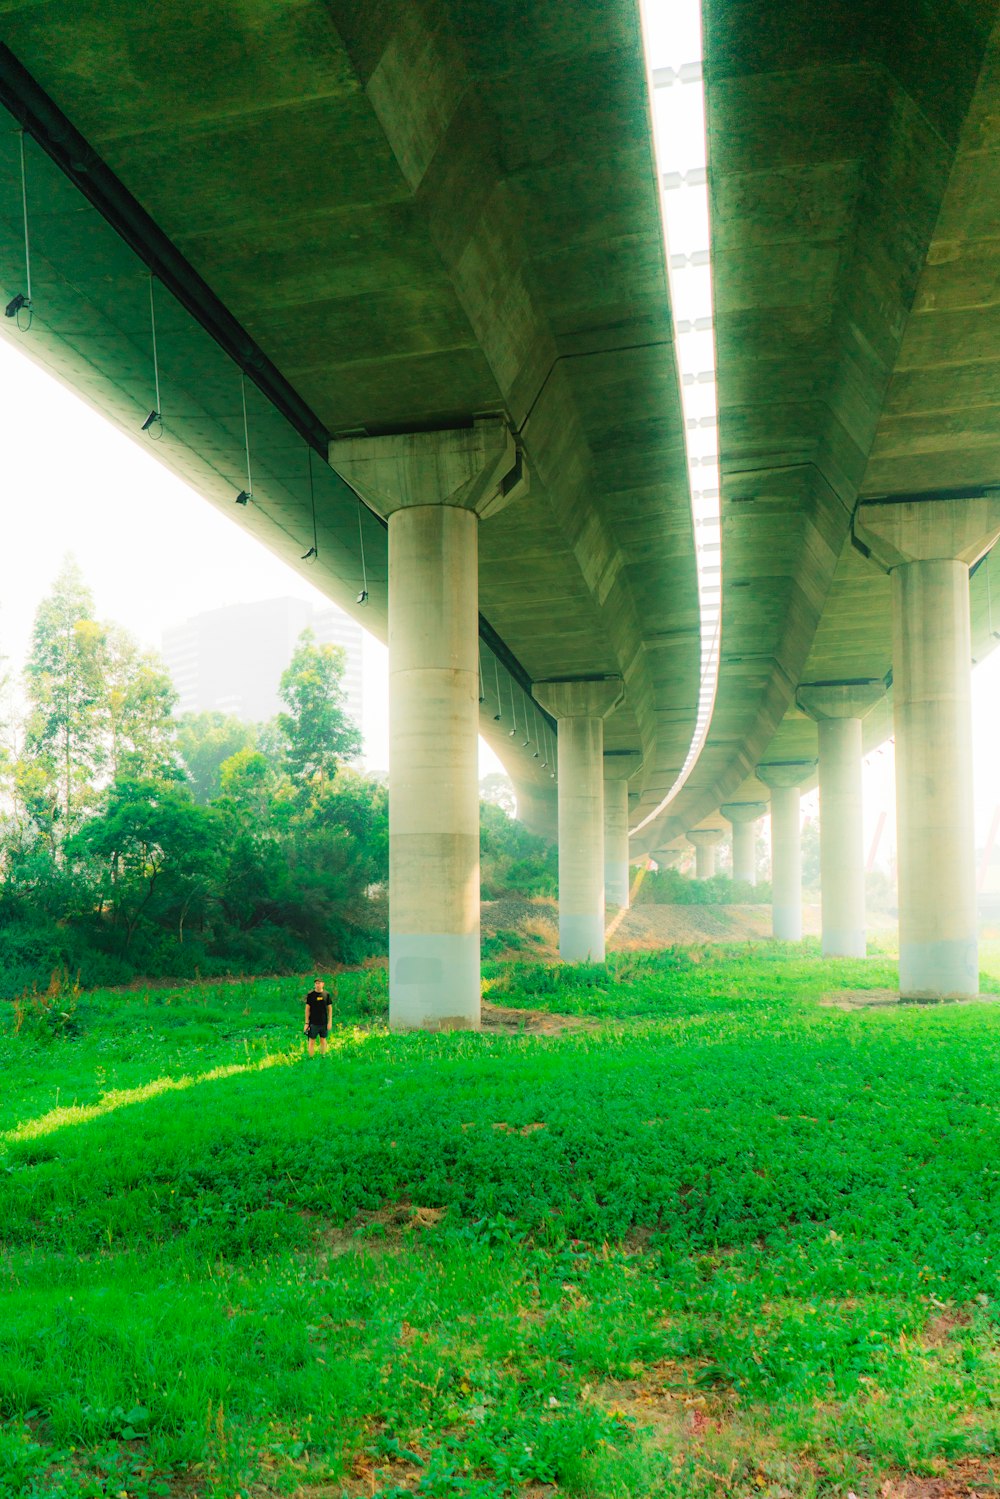 green grass under gray concrete bridge during daytime